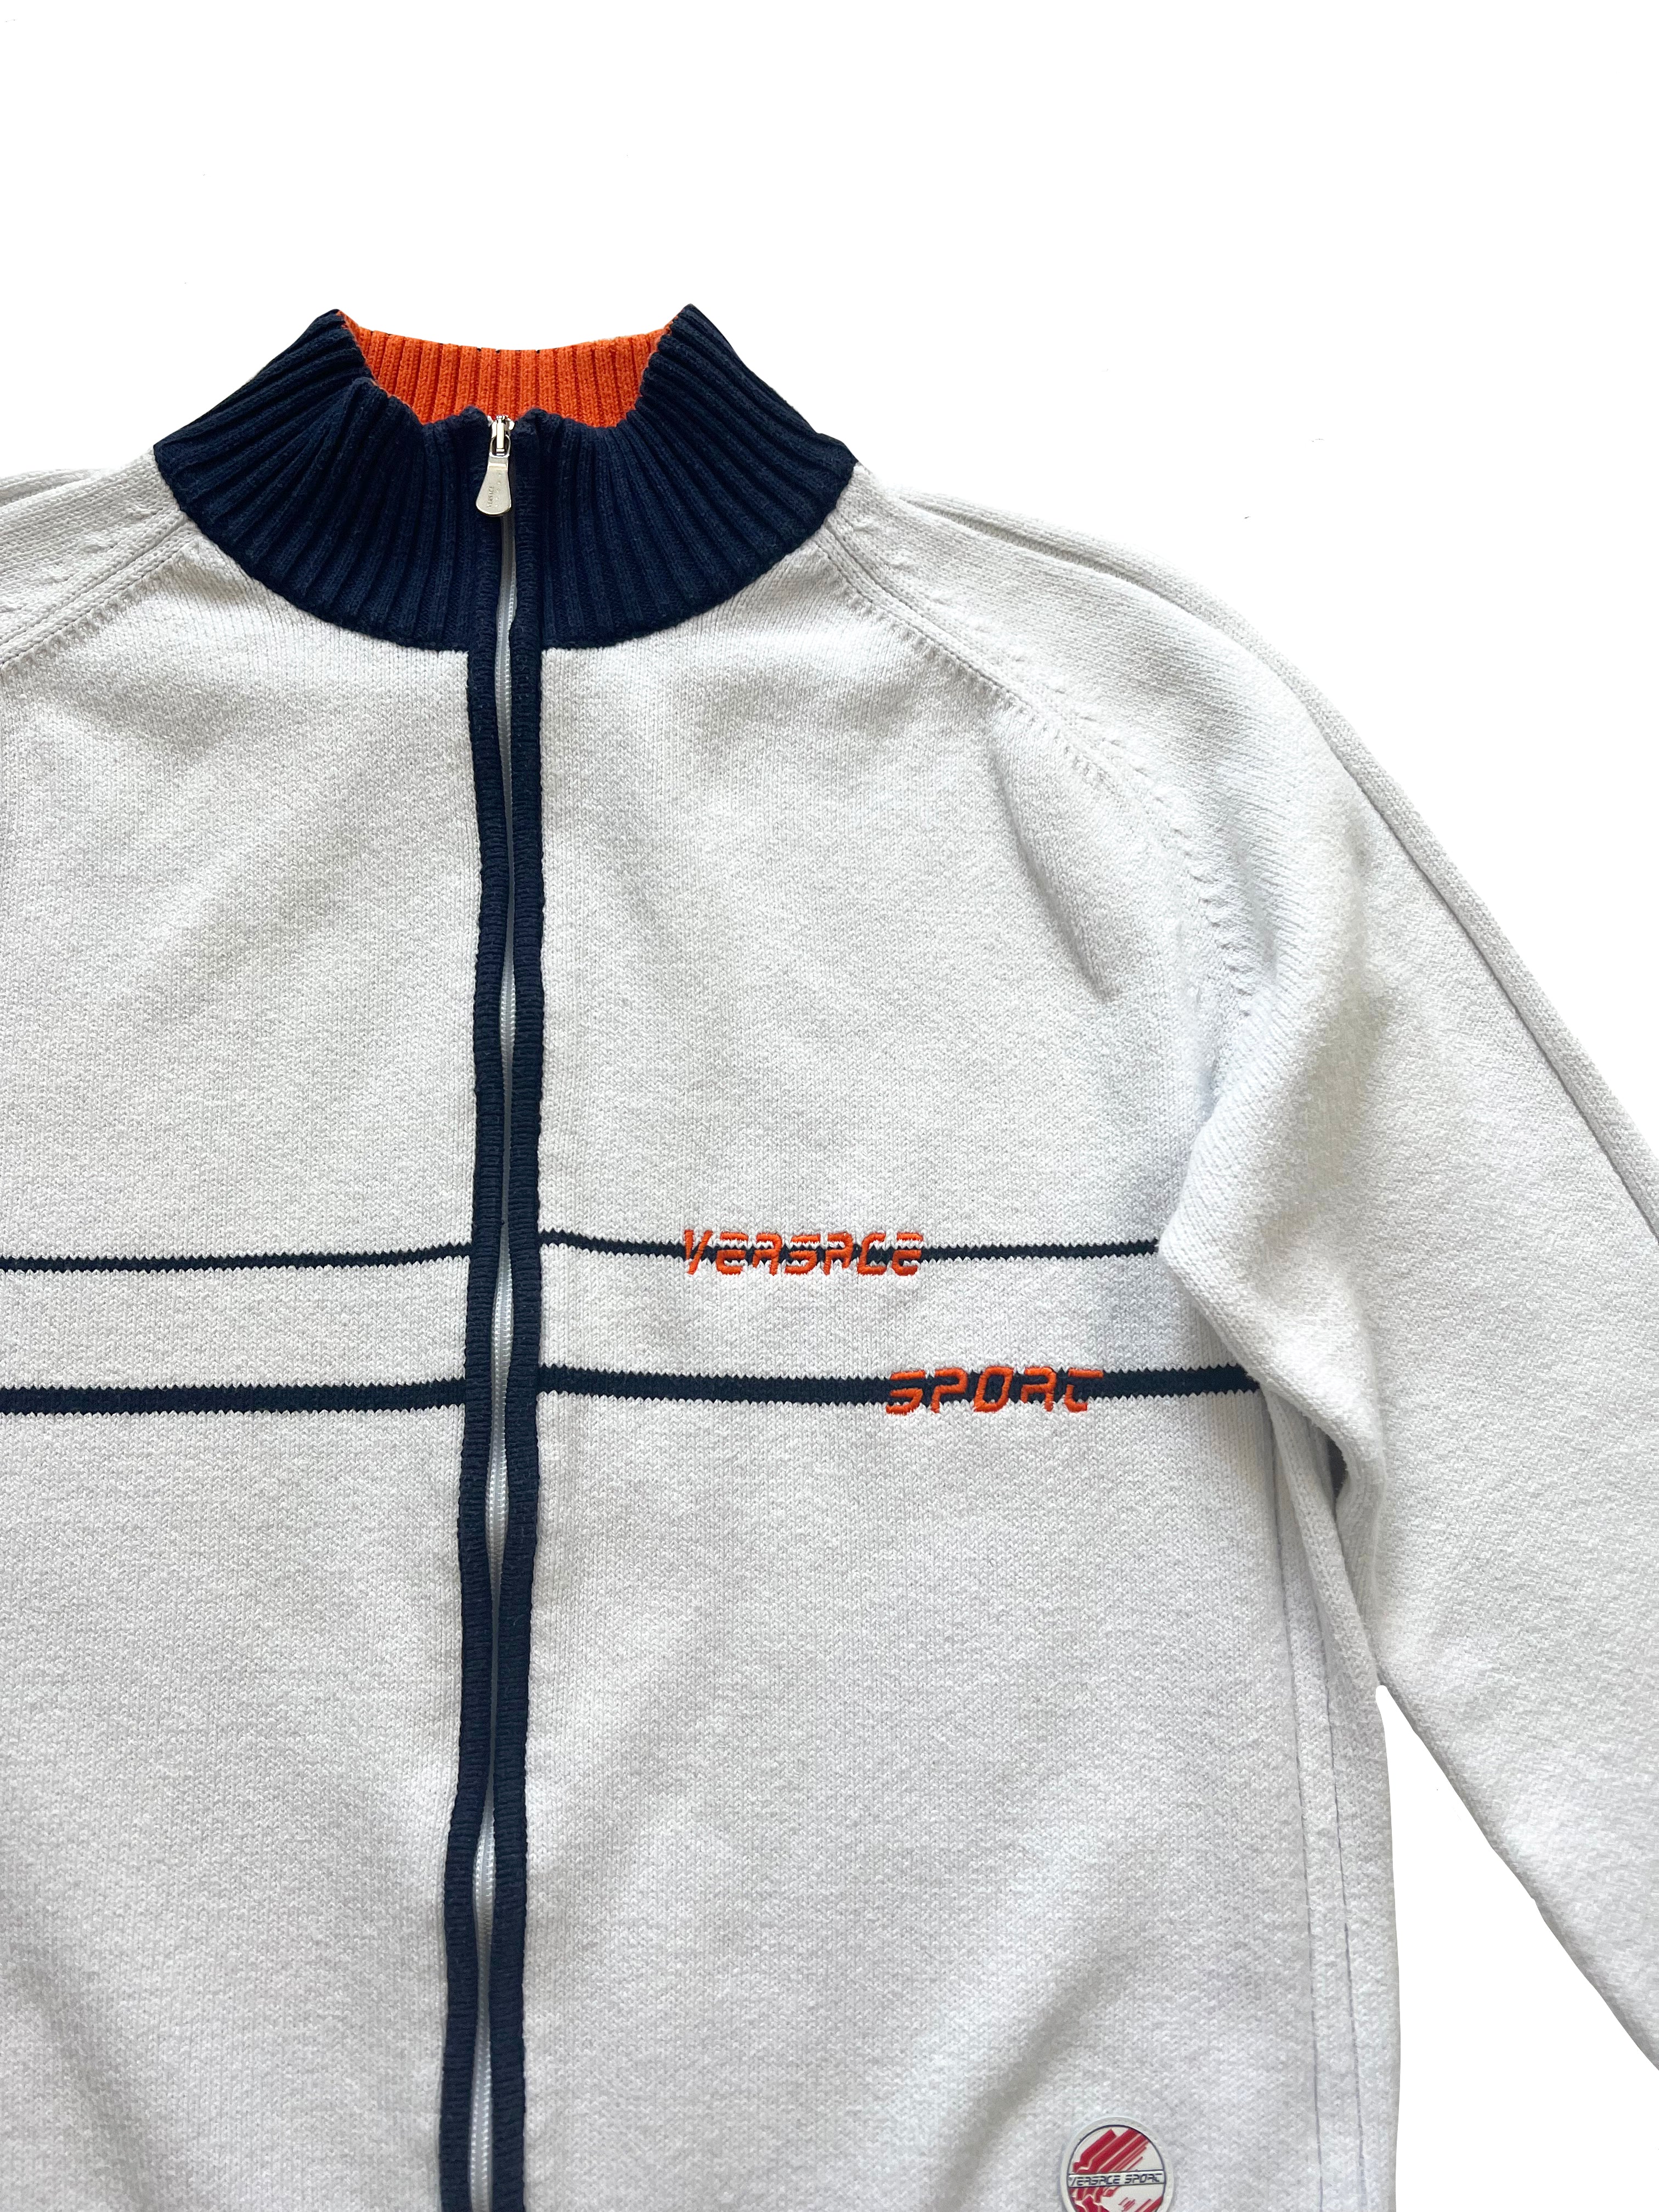 Versace Sport White Zip Up Jacket 00's